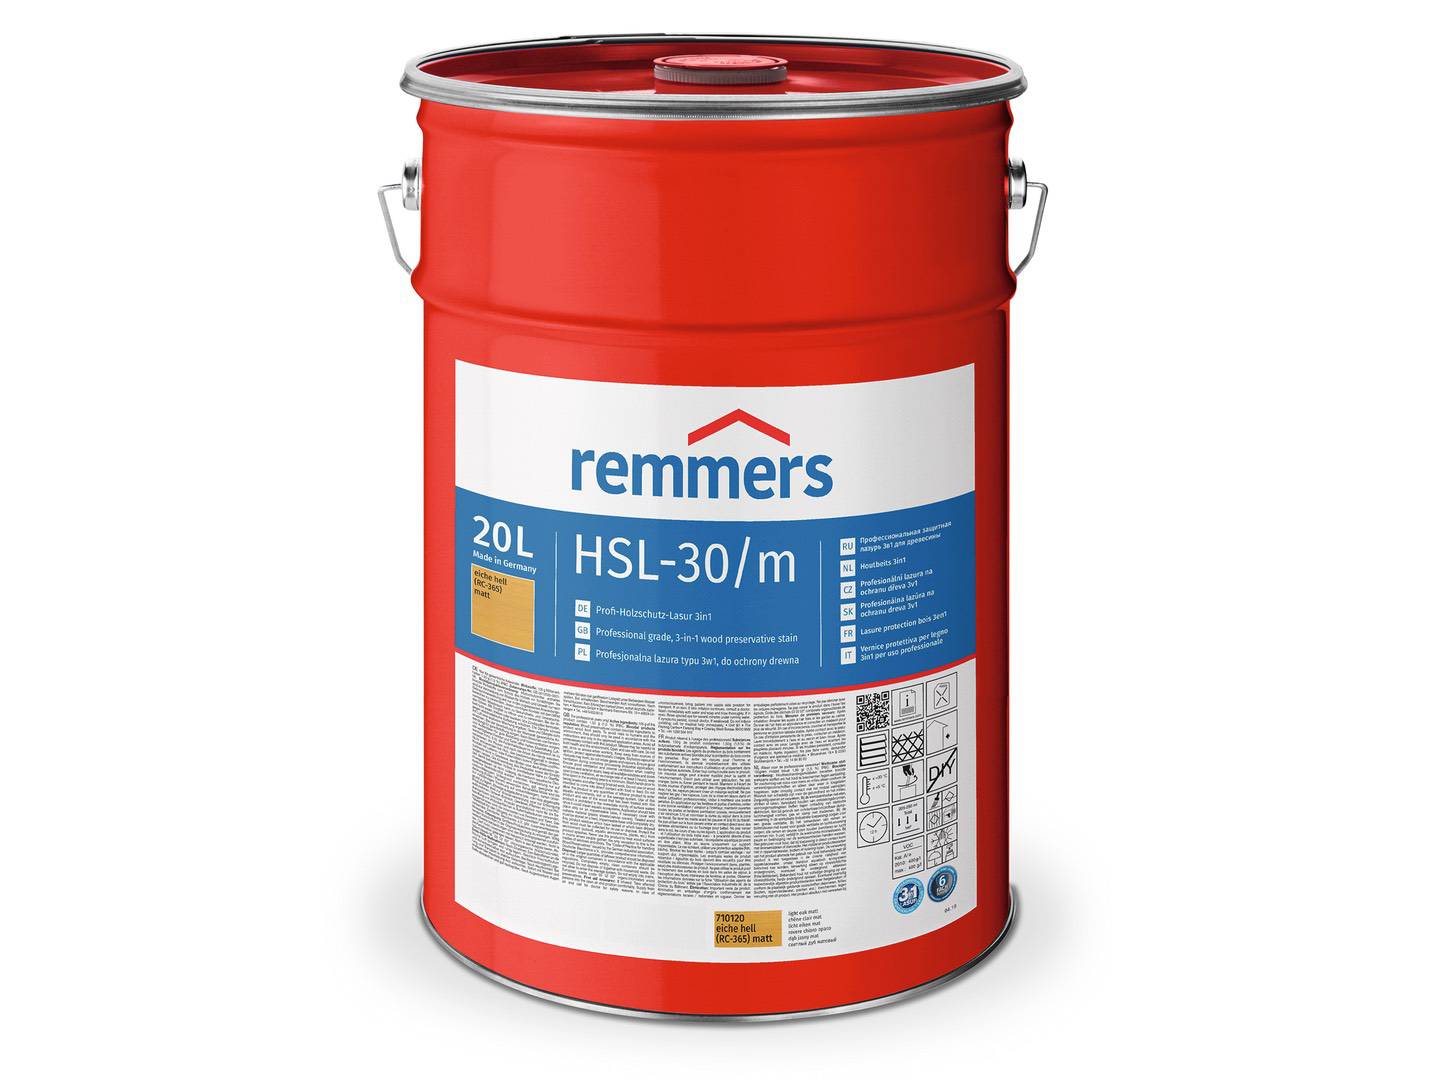 REMMERS HSL-30/m-Profi-Holzschutz-Lasur 3in1 silbergrau (RC-970) matt 2,50 l